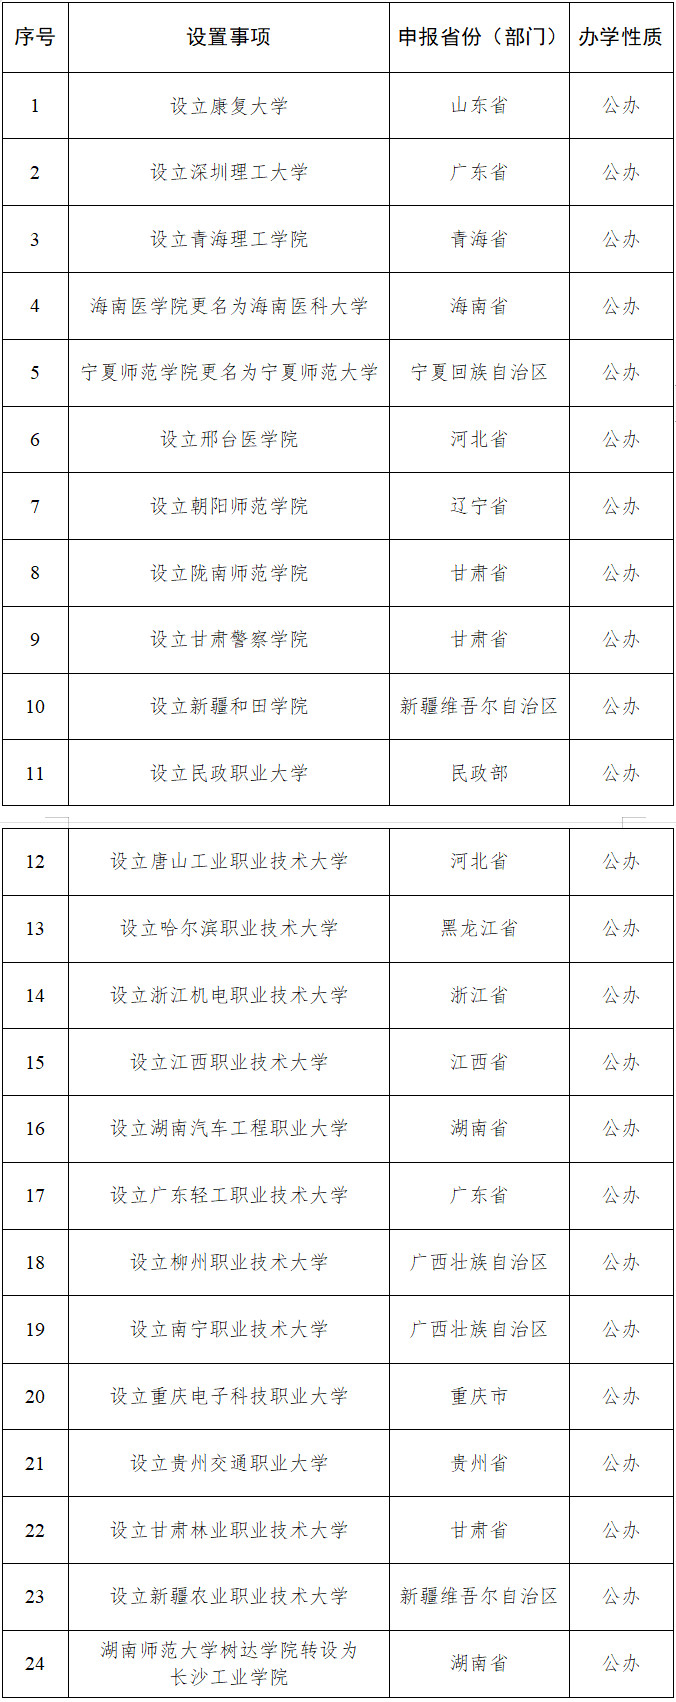 拟同意设置本科高等学校名单。公示显示，示拟设置深圳来源：教育部网站</p><p style=